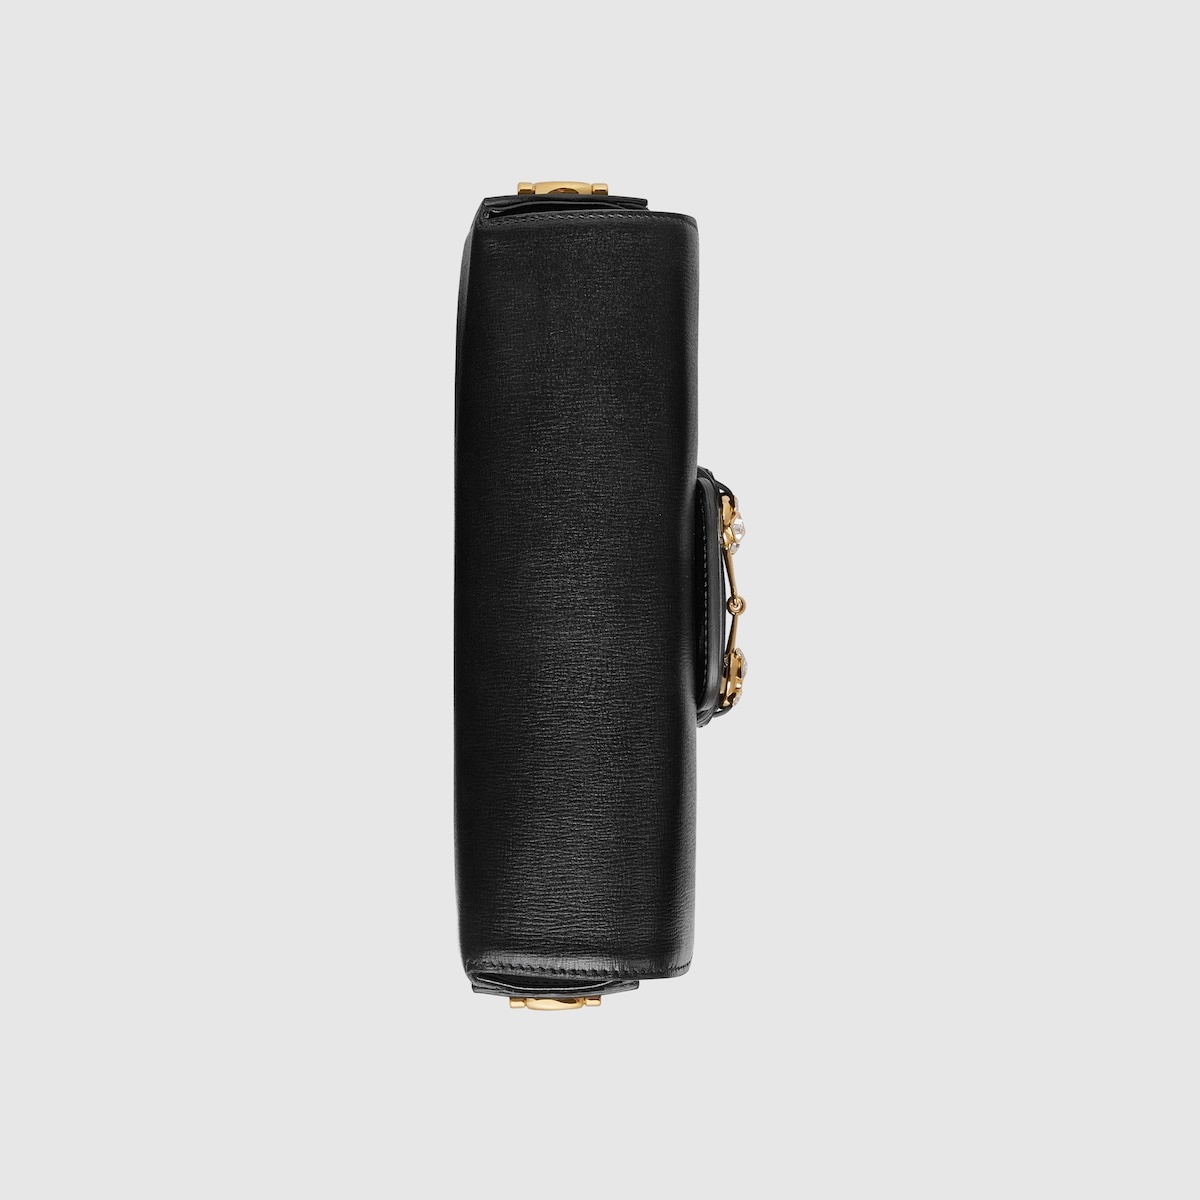 Gucci Horsebit 1955 small shoulder bag - 8